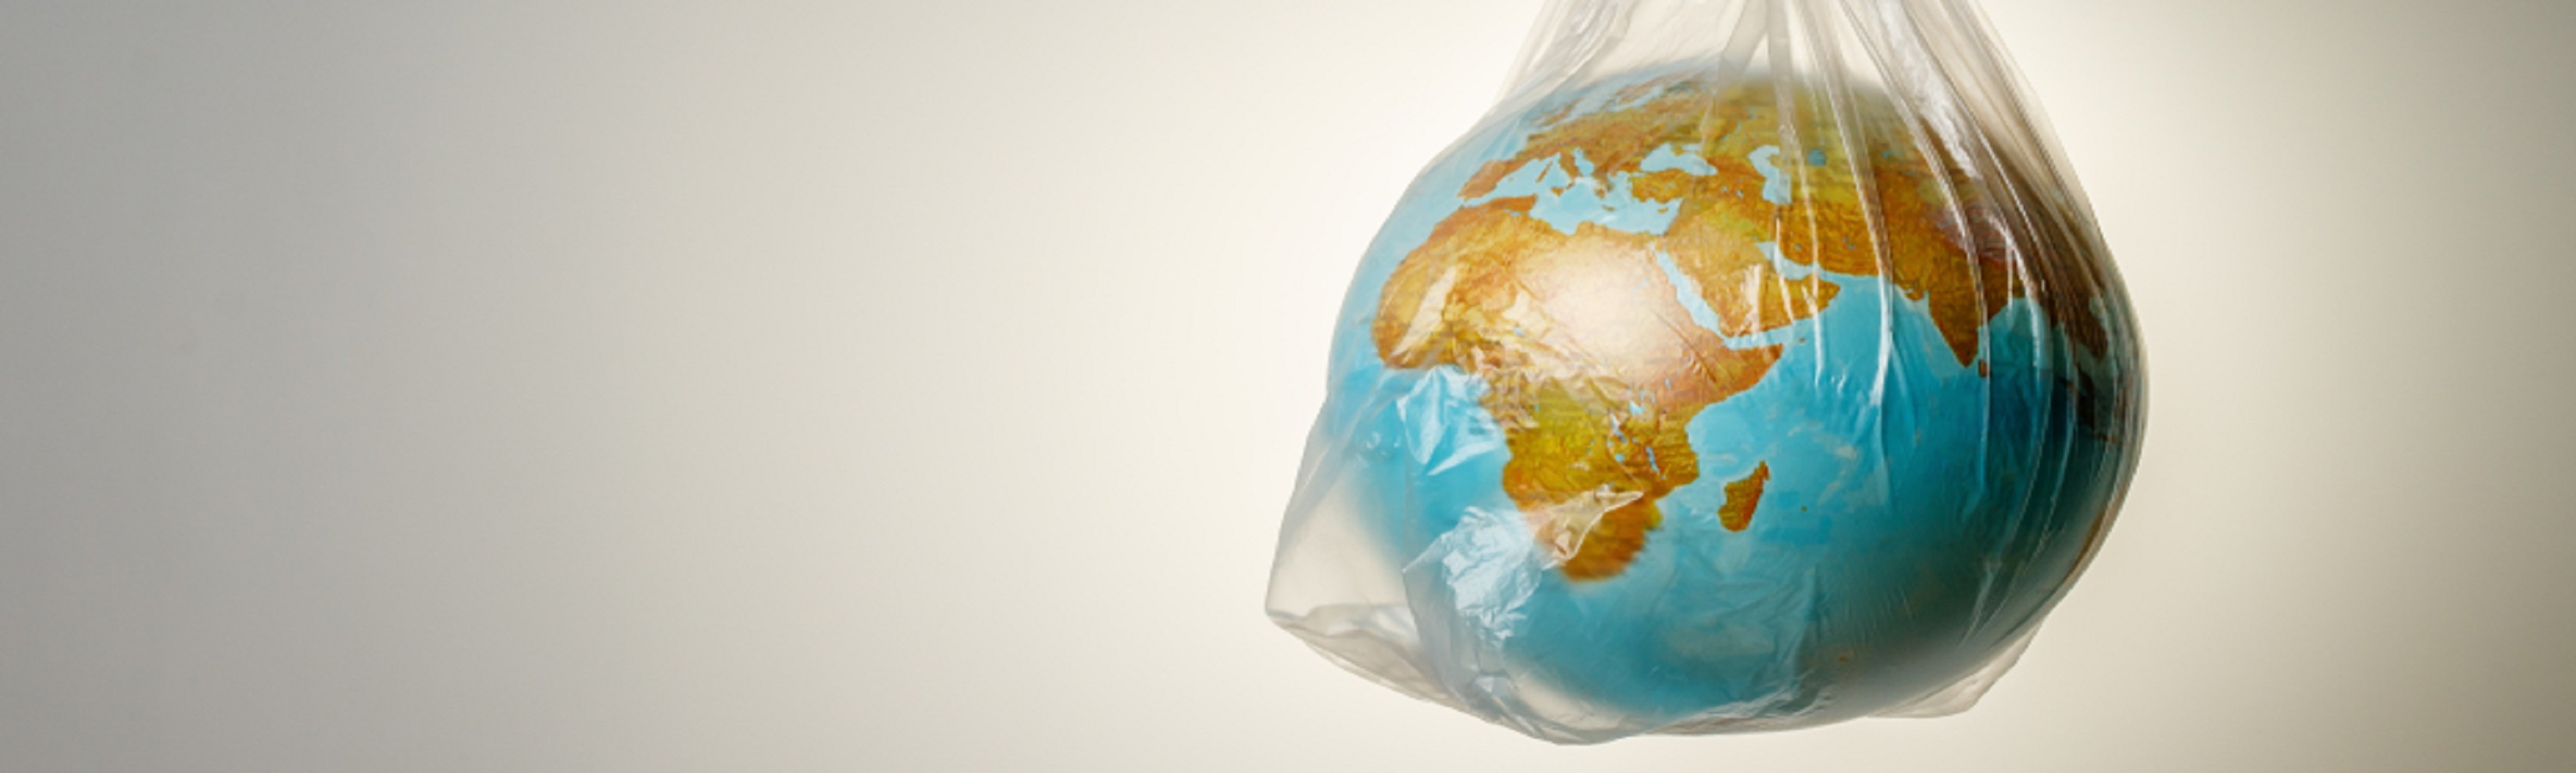 100% del plástico reutilizable en 2025